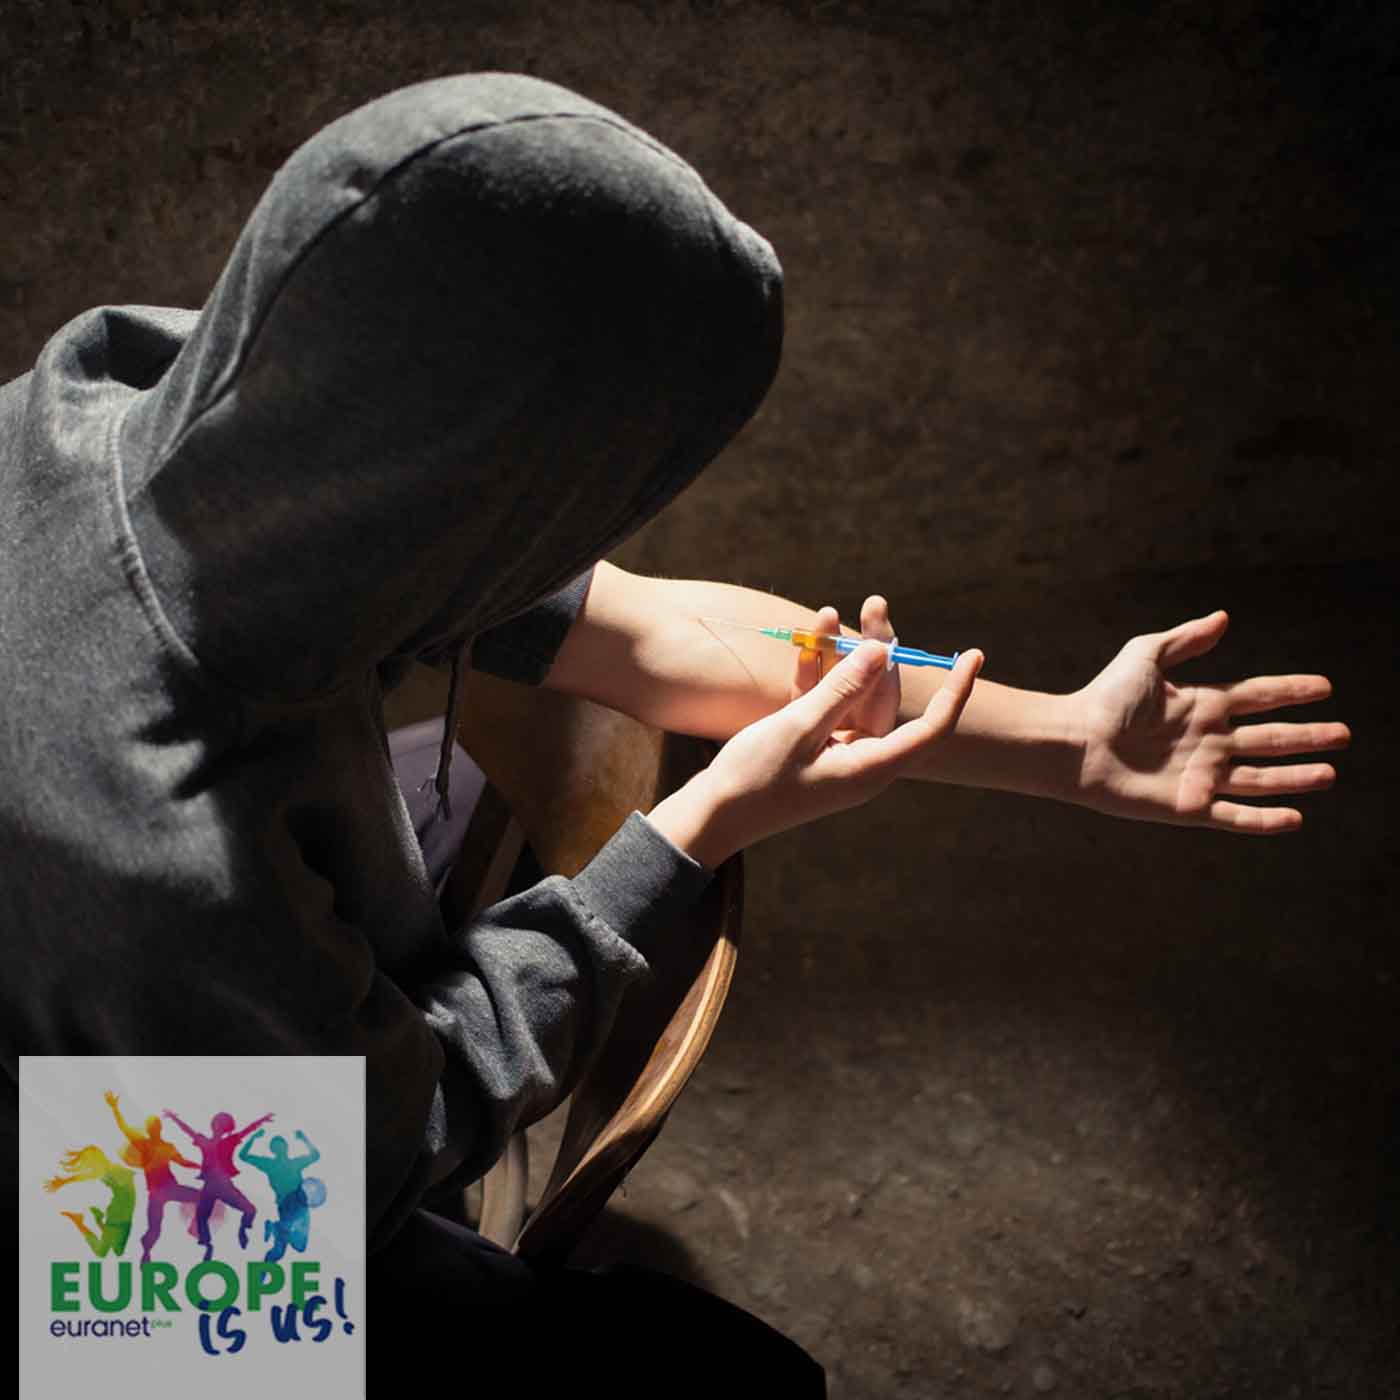 Generaţia Z: Tinerii europeni şi drogurile